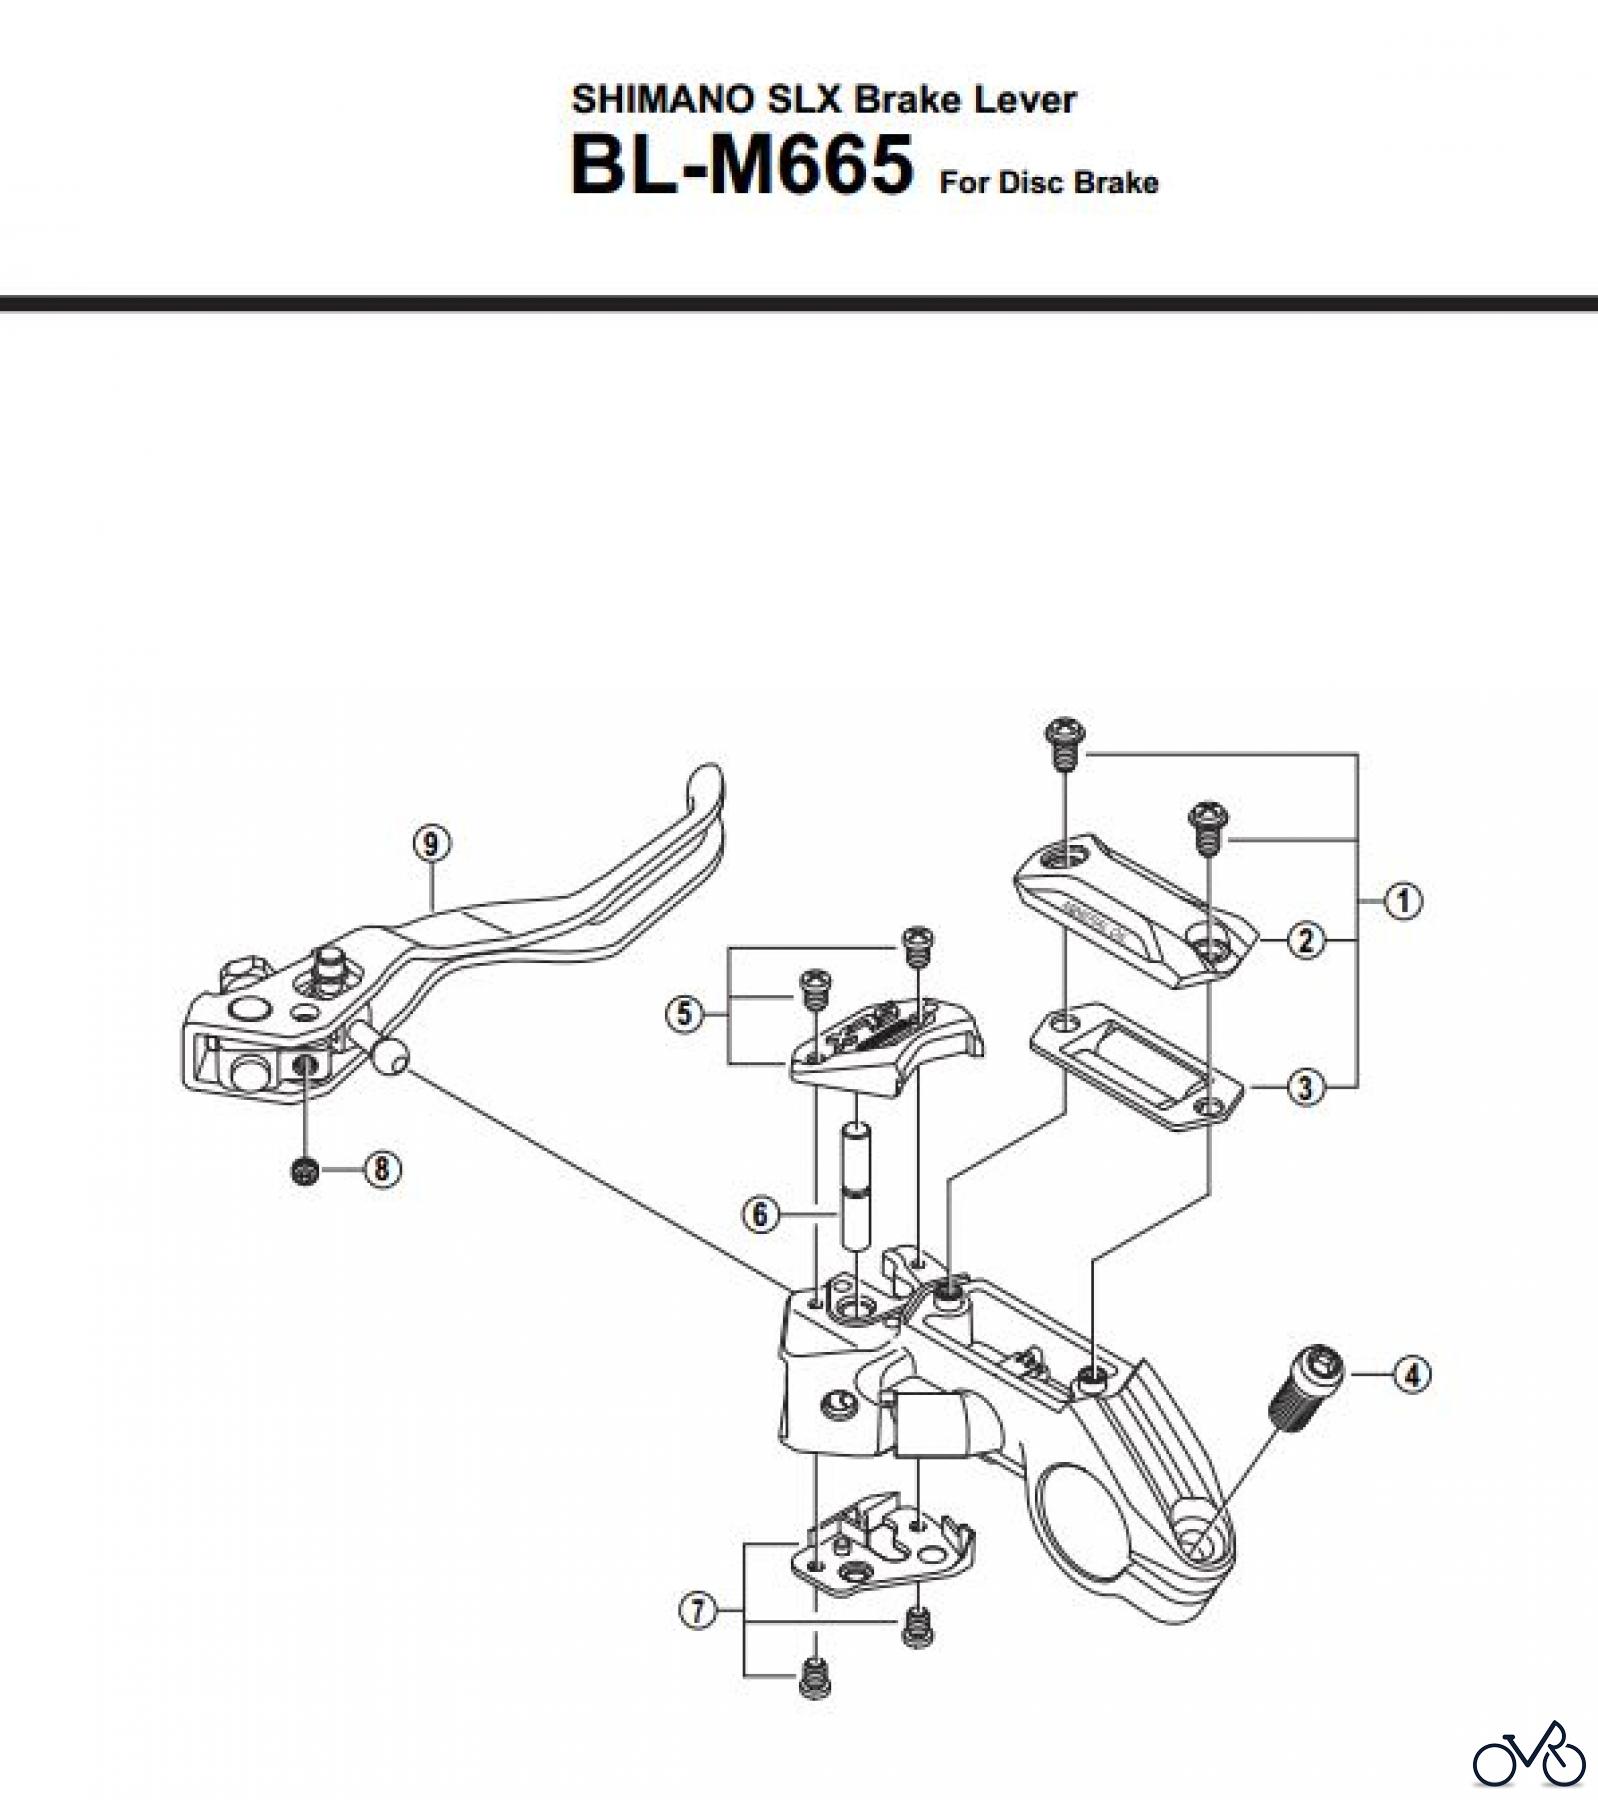  Shimano BL Brake Lever - Bremshebel BL-M665-2803A